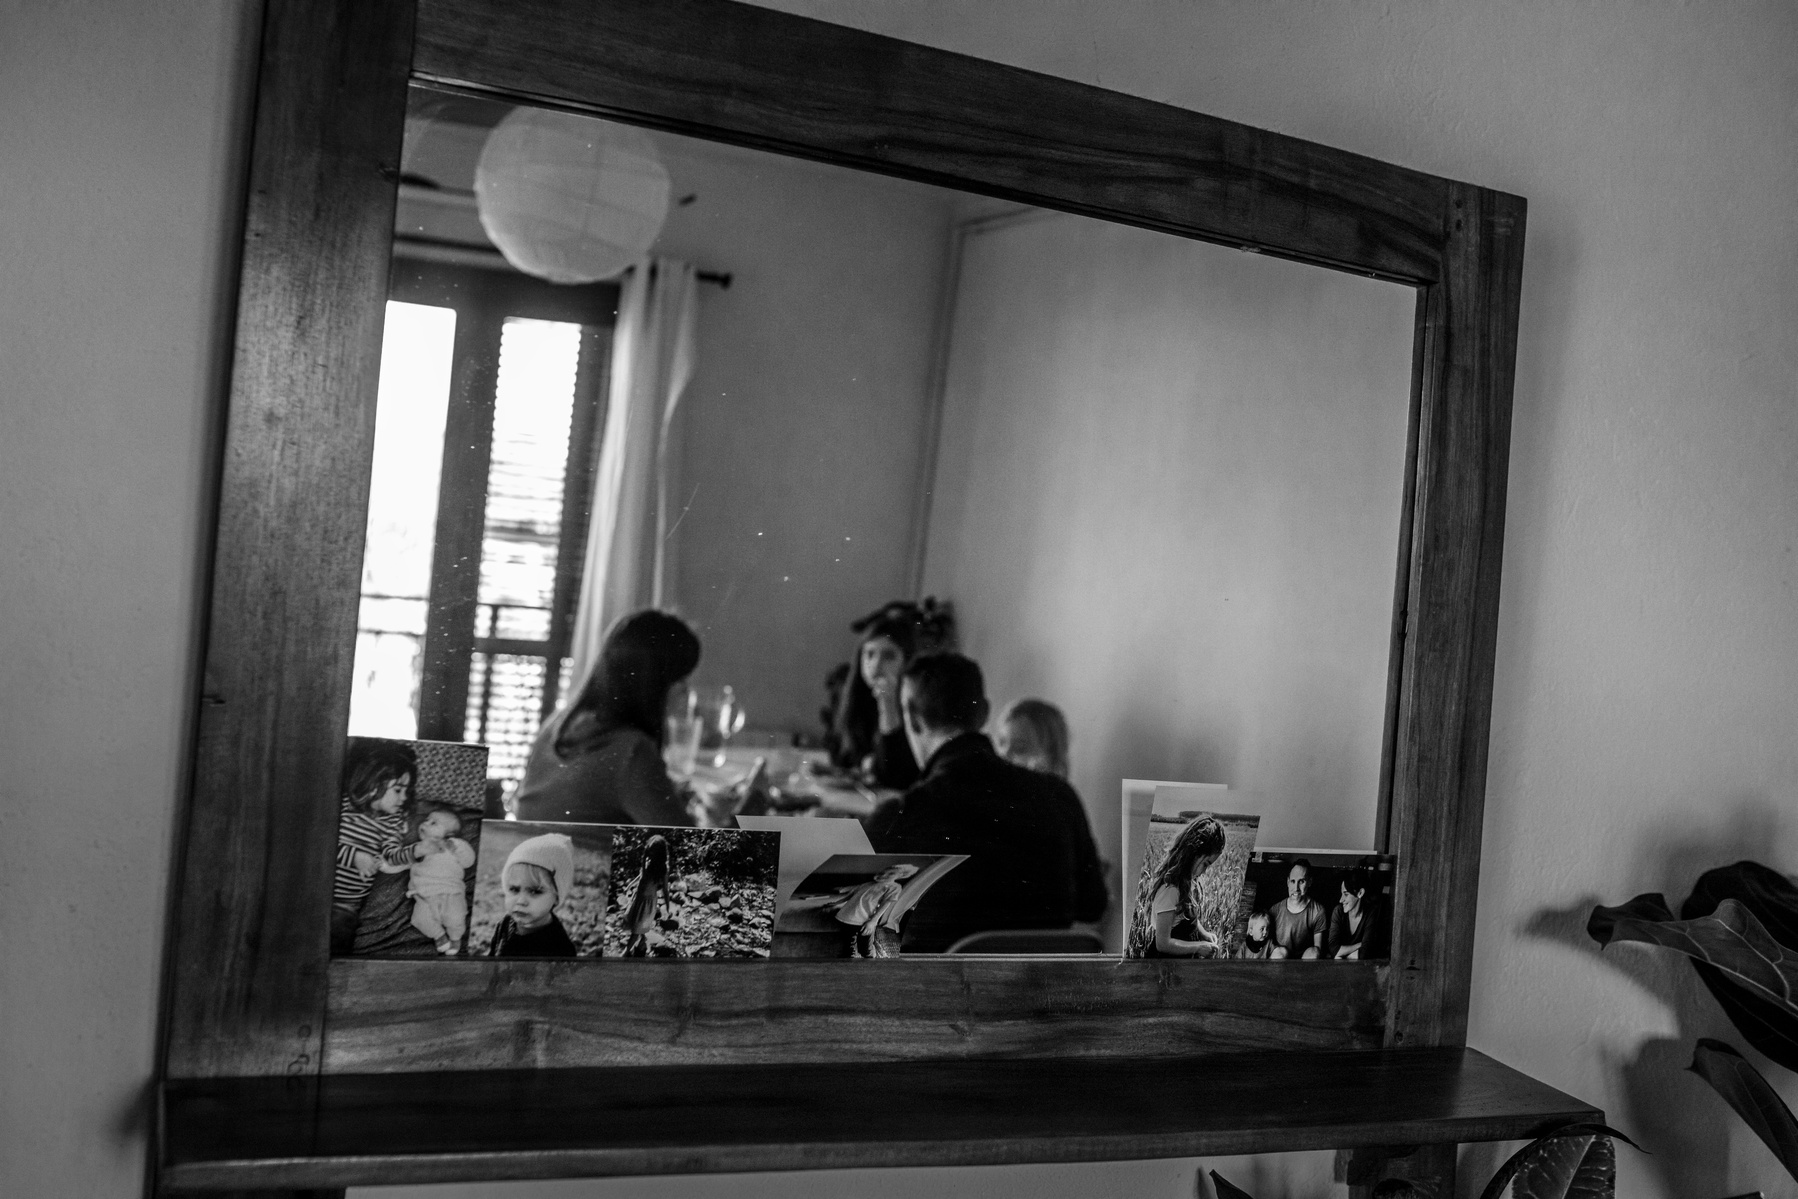 Reflejo en un espejo del salon de una familia comiendo.
Manuela Franjou family photography 